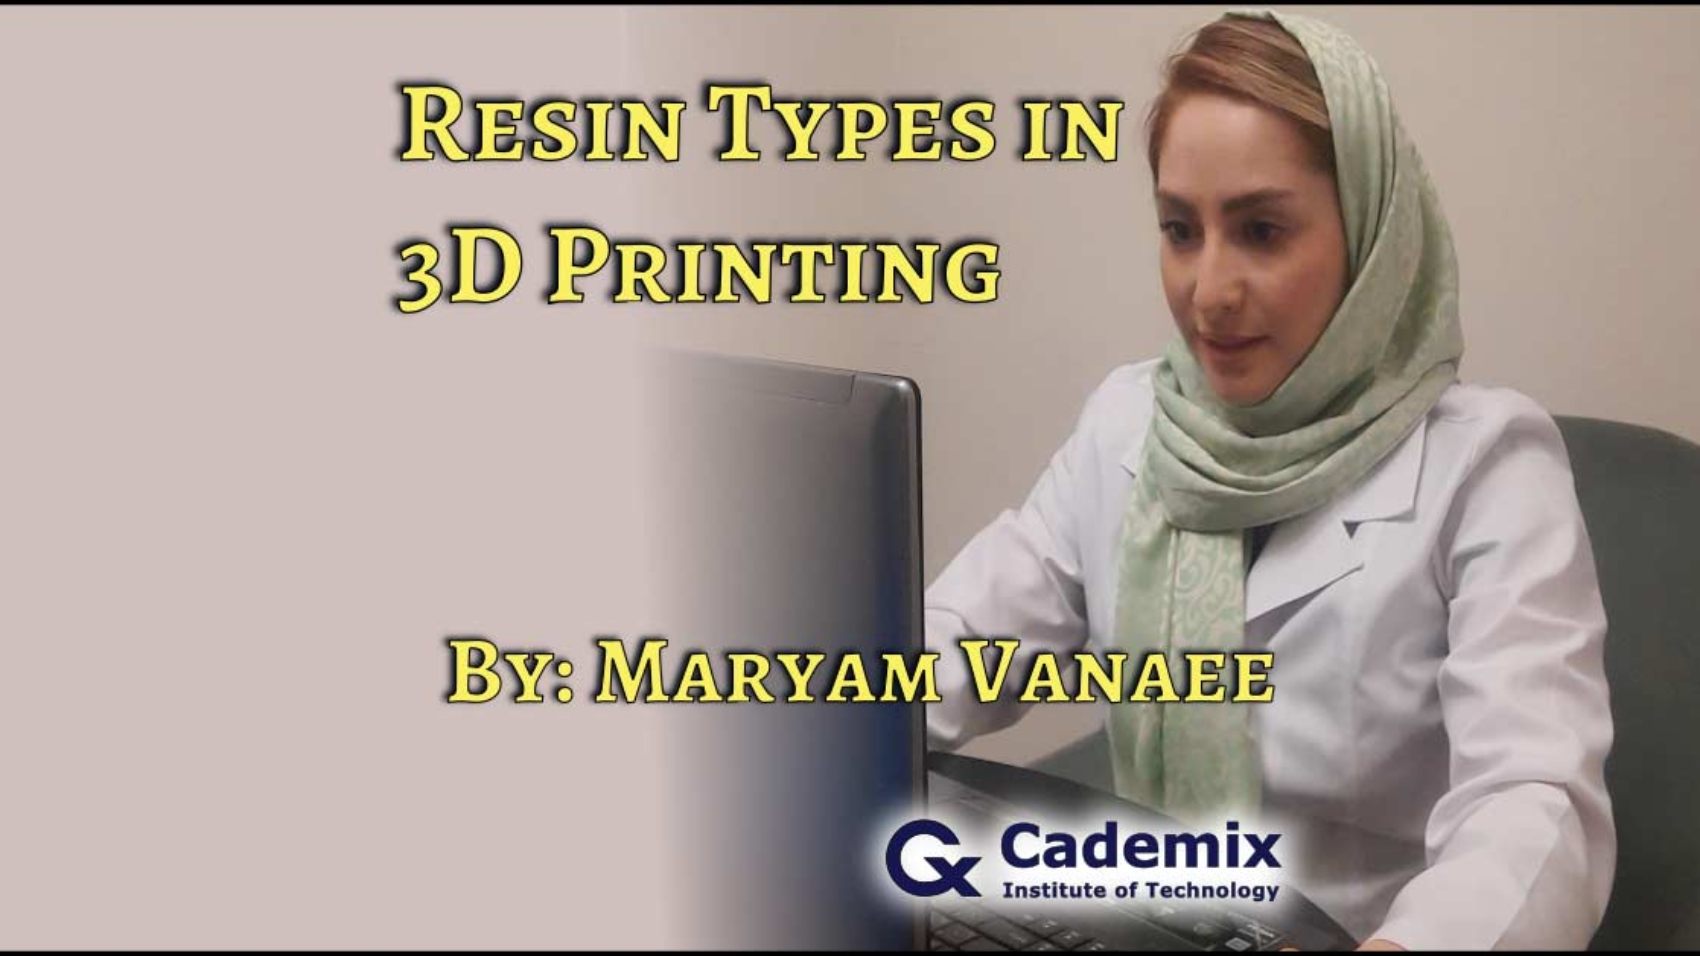 Resin 3D printing by Maryam Vanaee and Cademix magazine